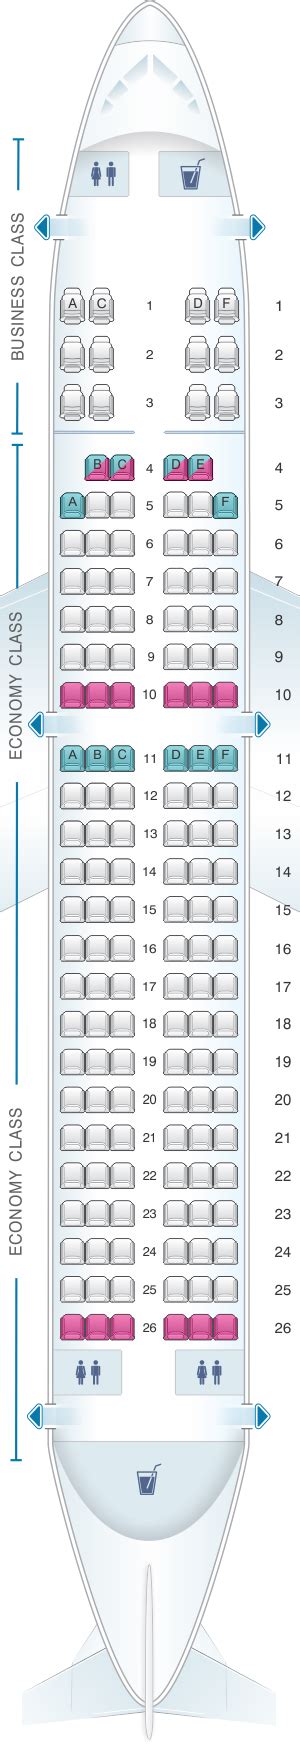 Airbus A320 Go Air Seat Map